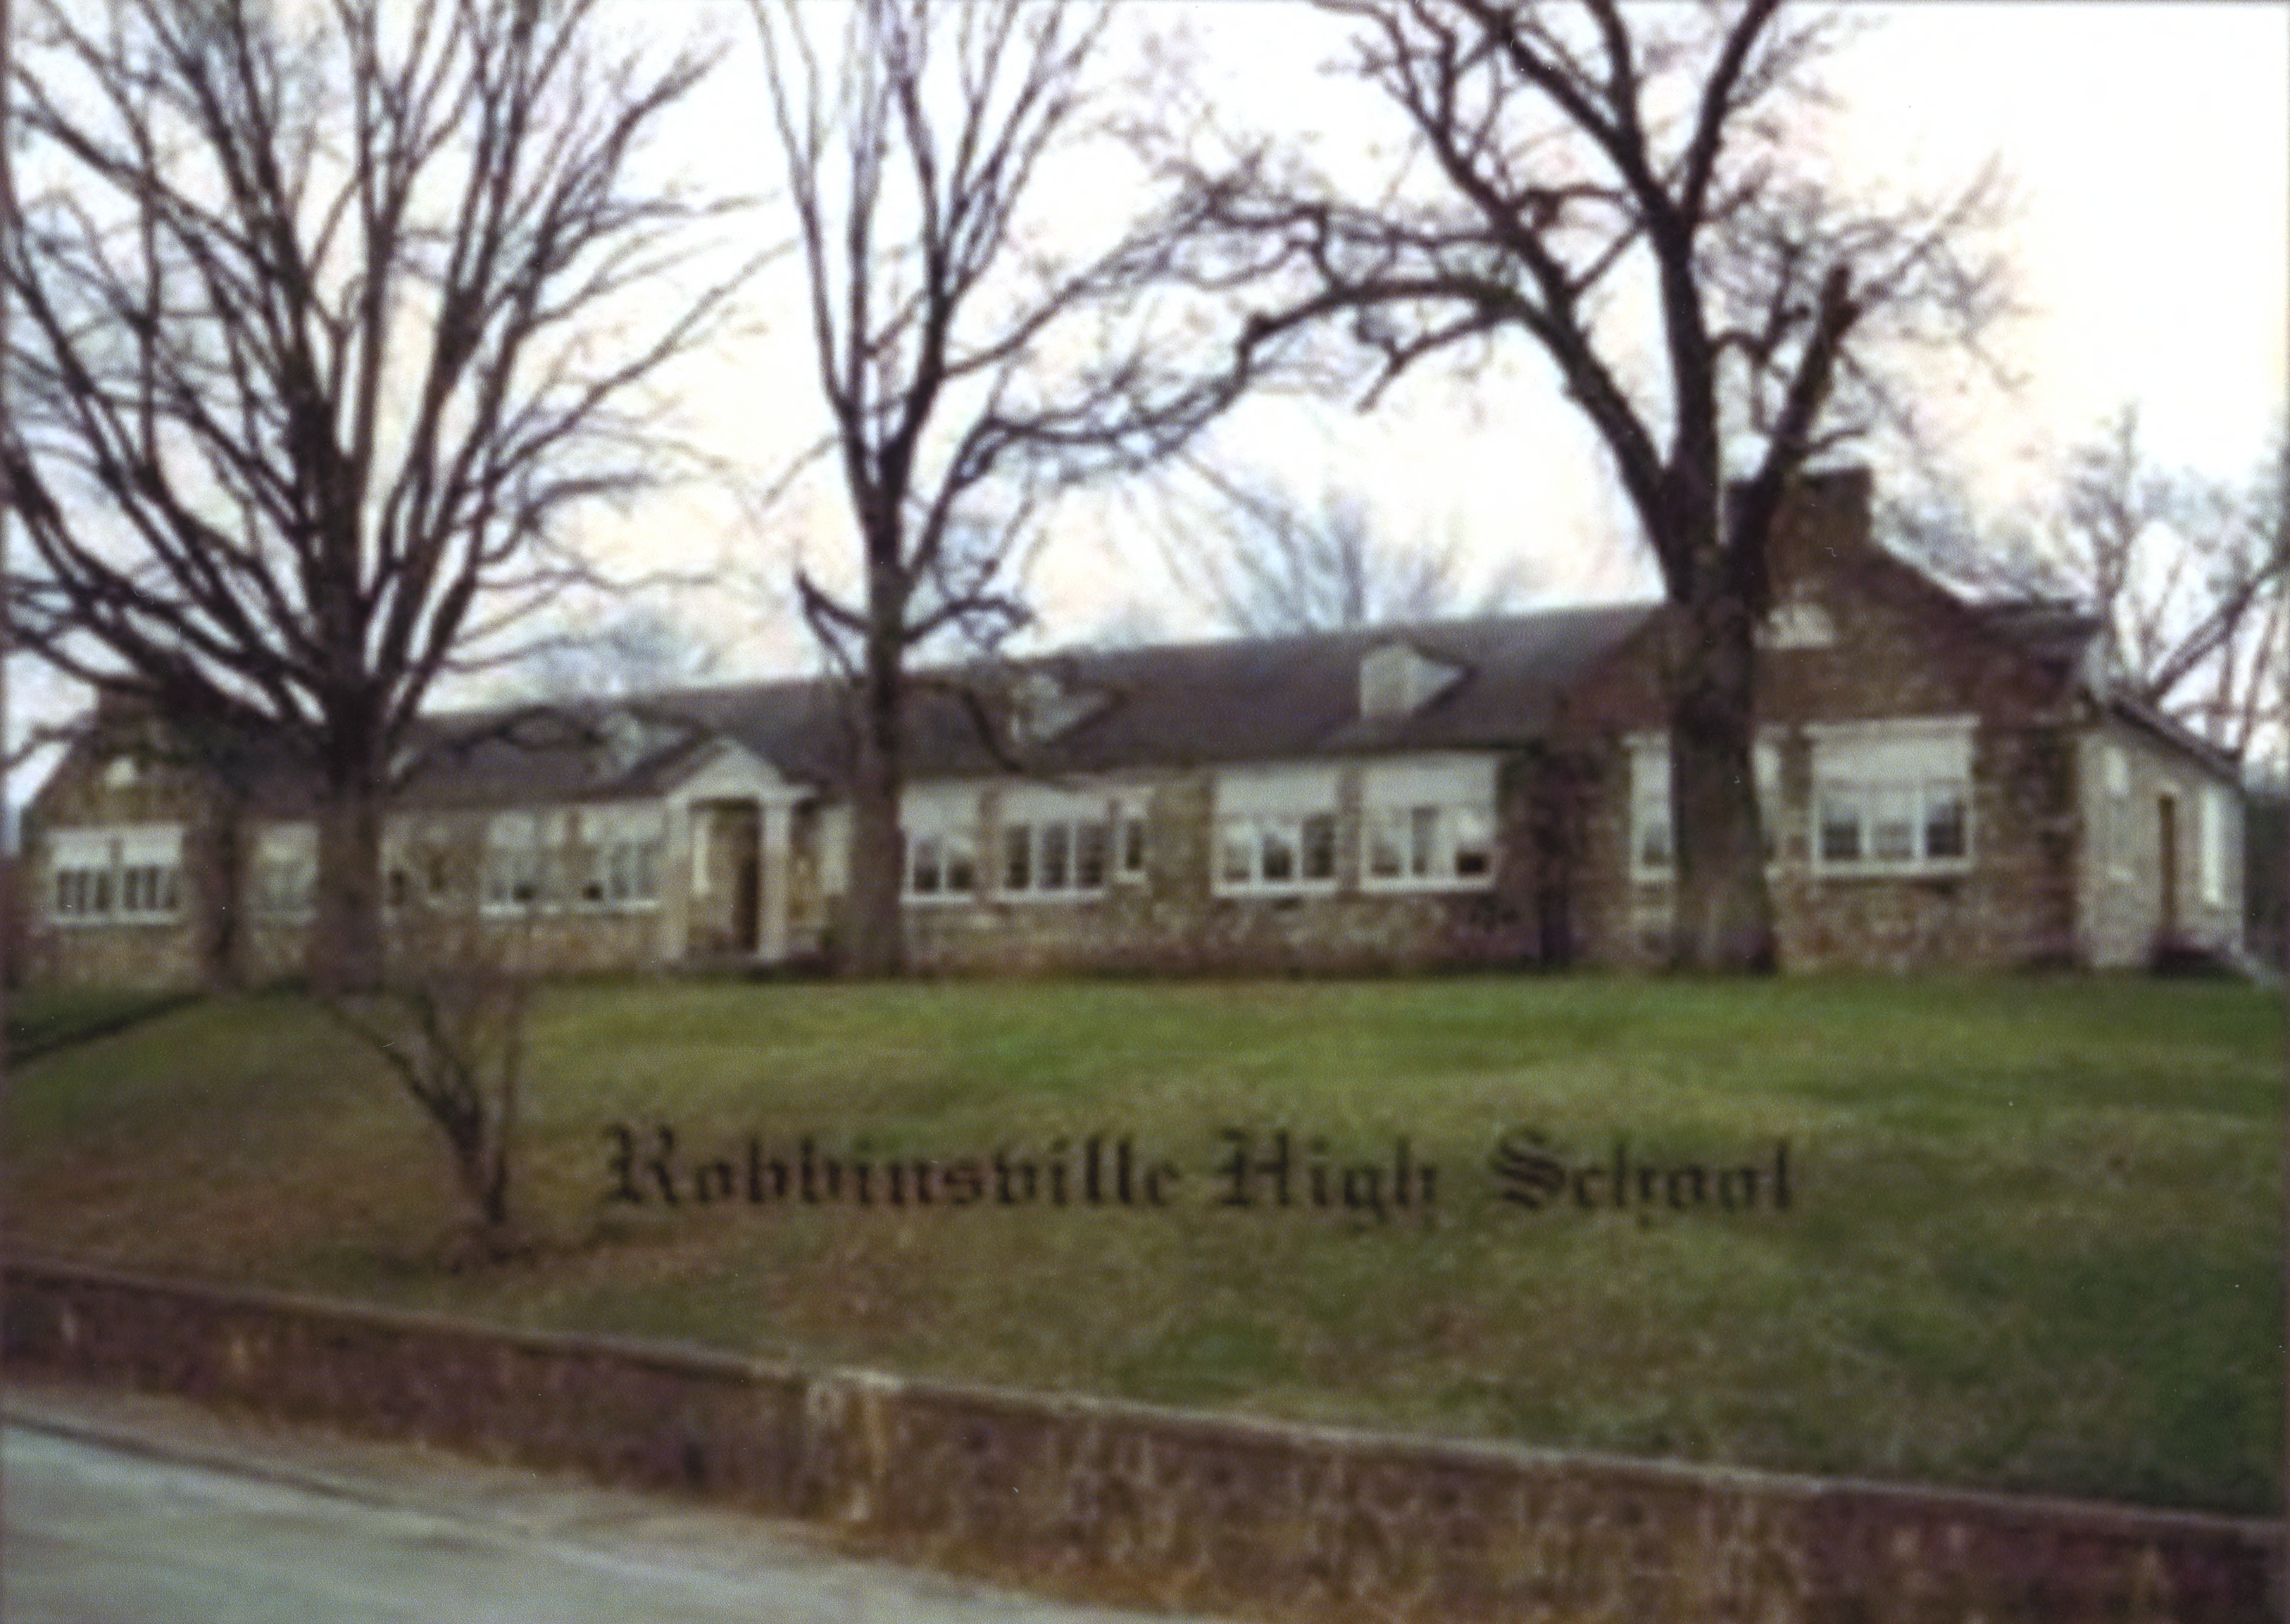 Robbinsville High School